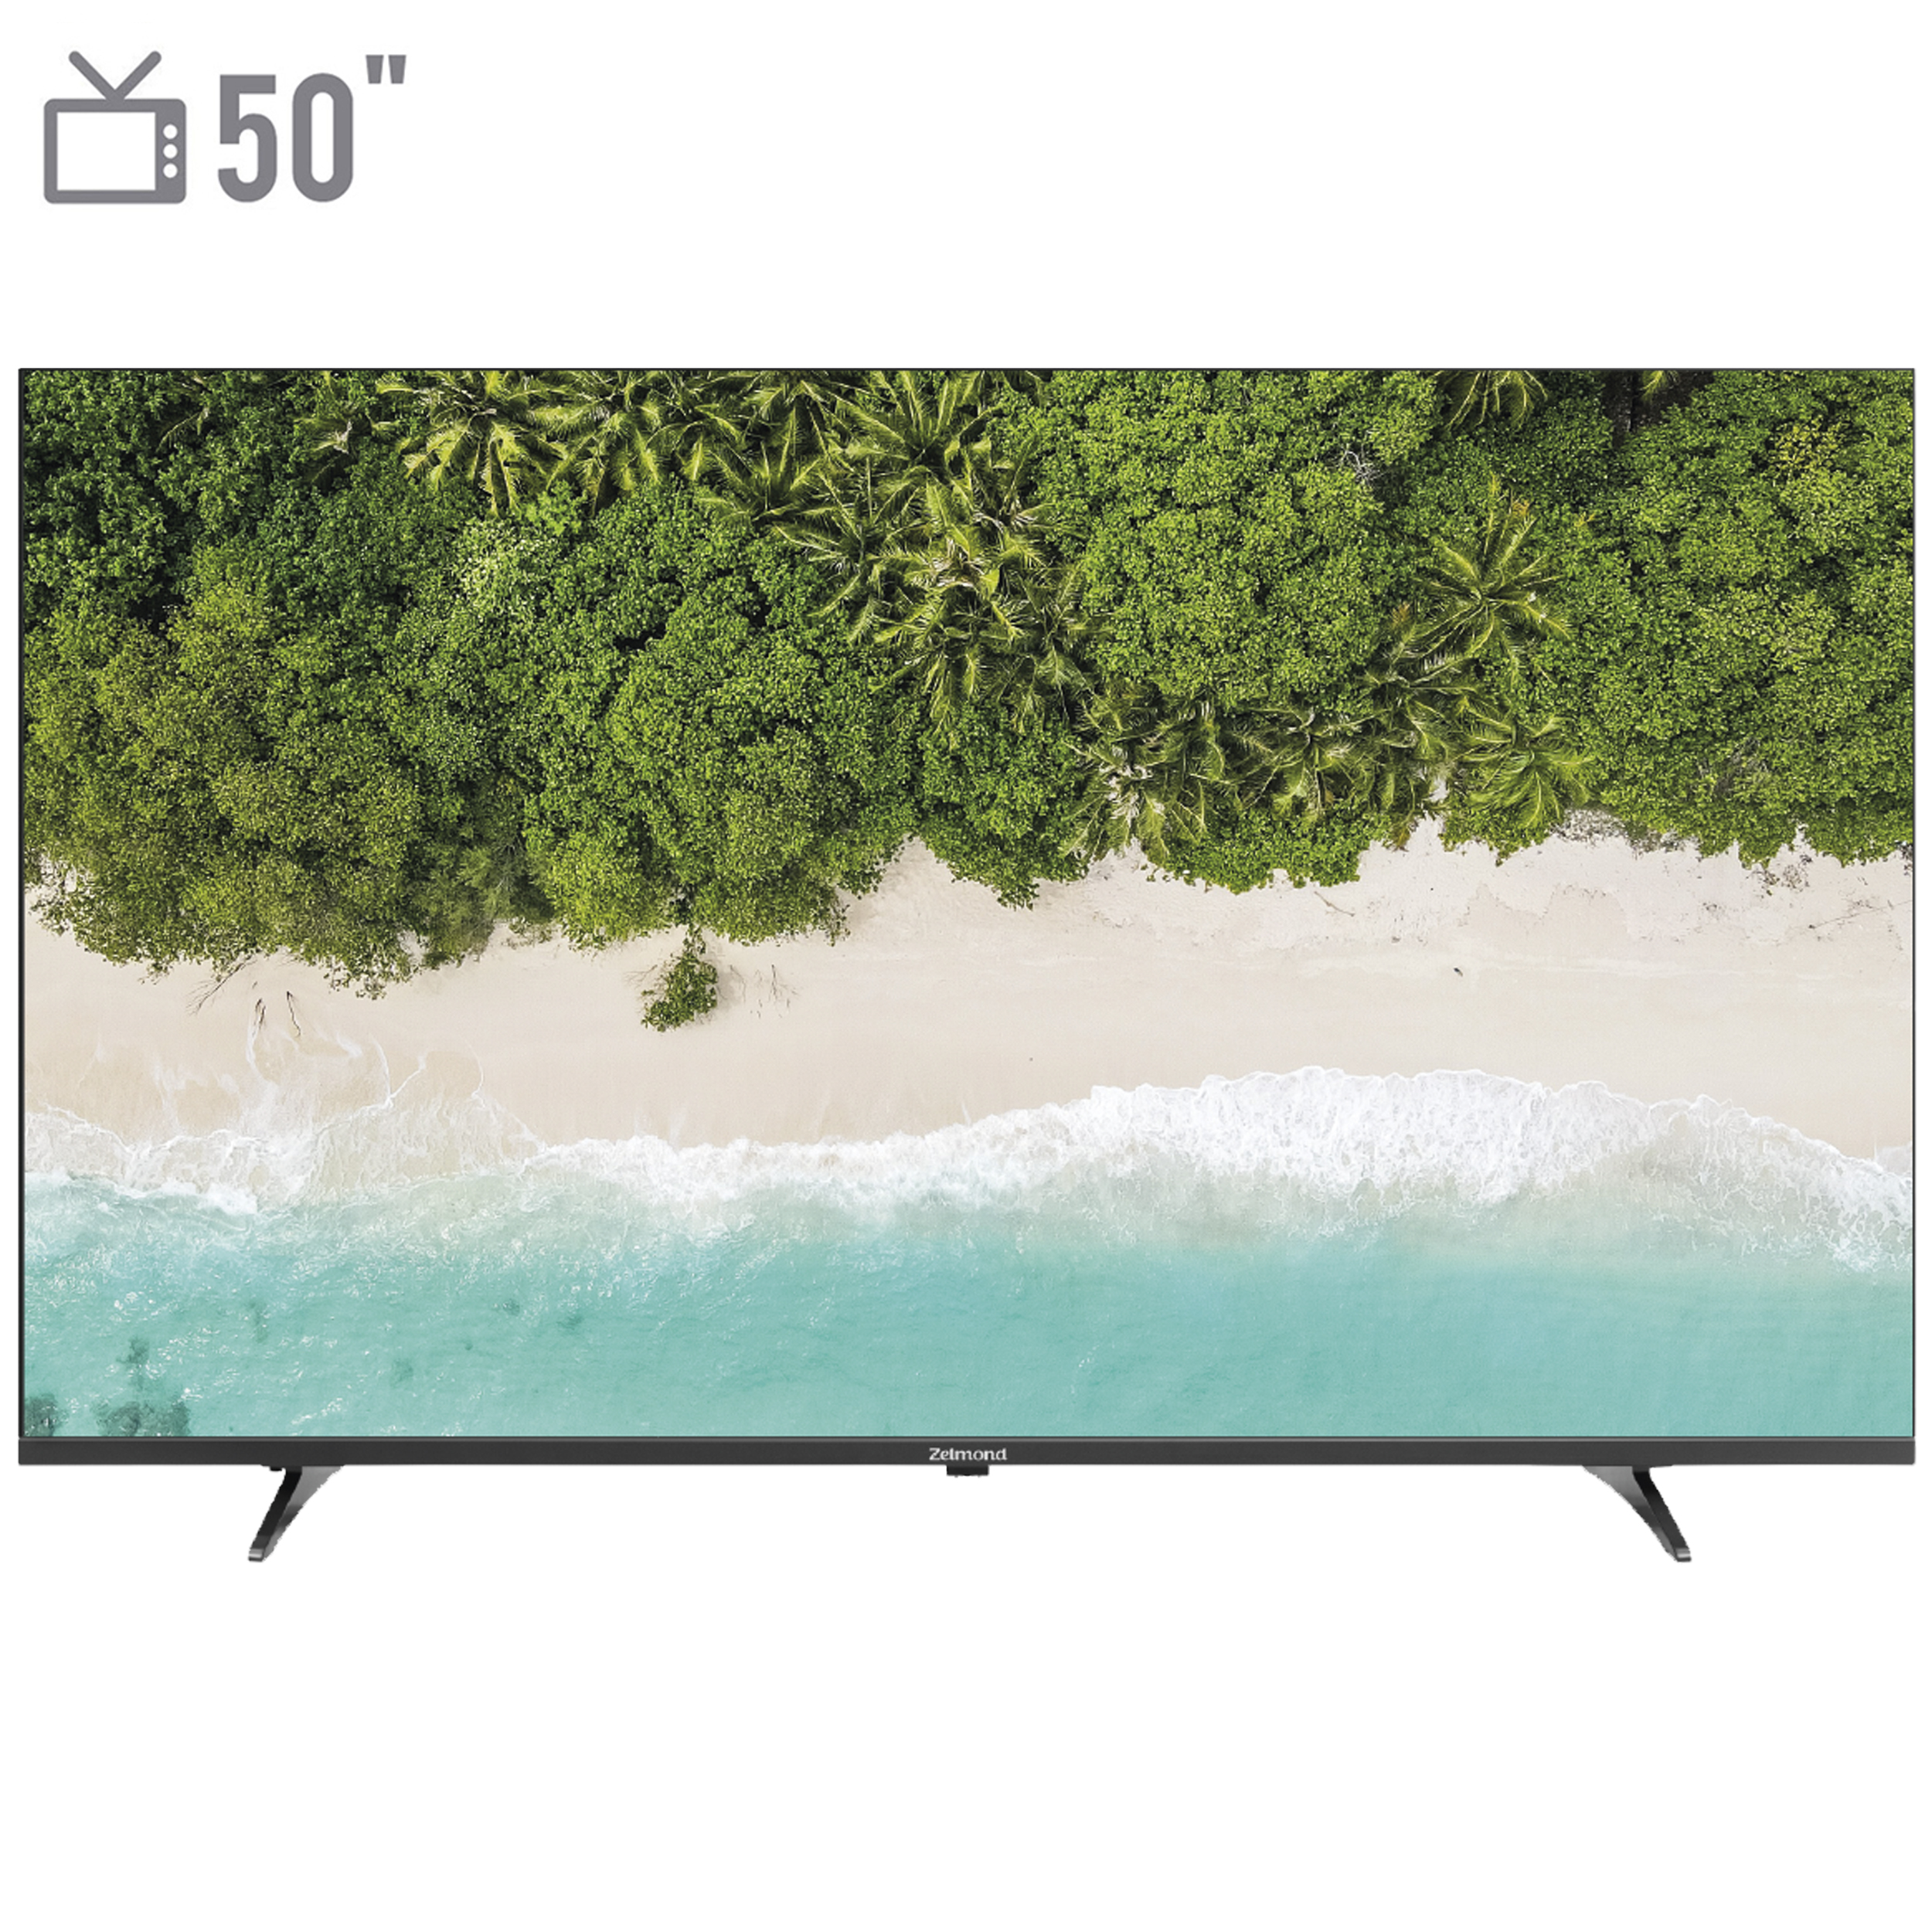 نکته خرید - قیمت روز تلویزیون ال ای دی زلموند مدل PANA50Z700 سایز 50 اینچ خرید